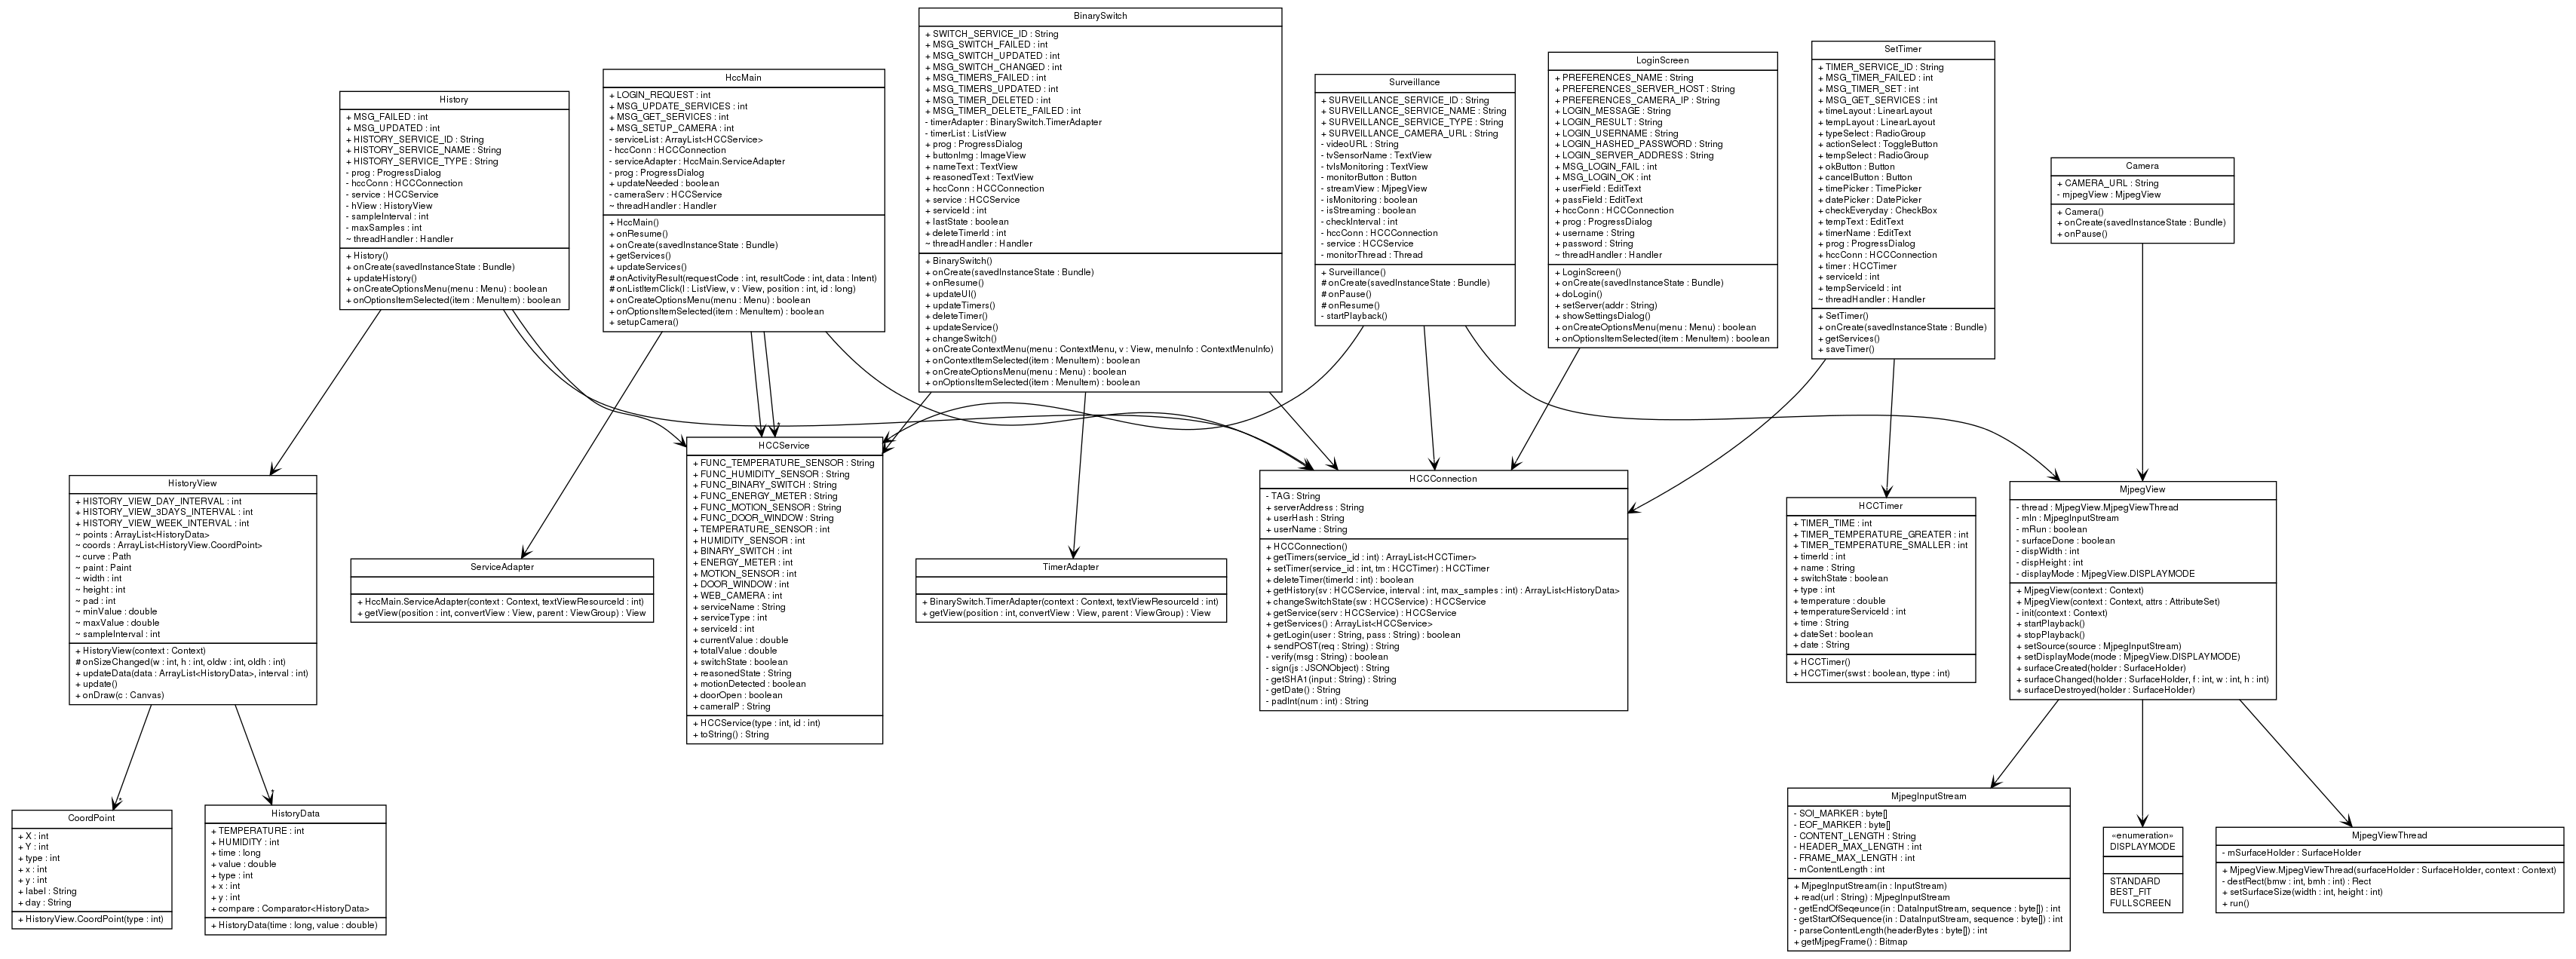 Generating UML diagram from Java source code - Daoyuan Li